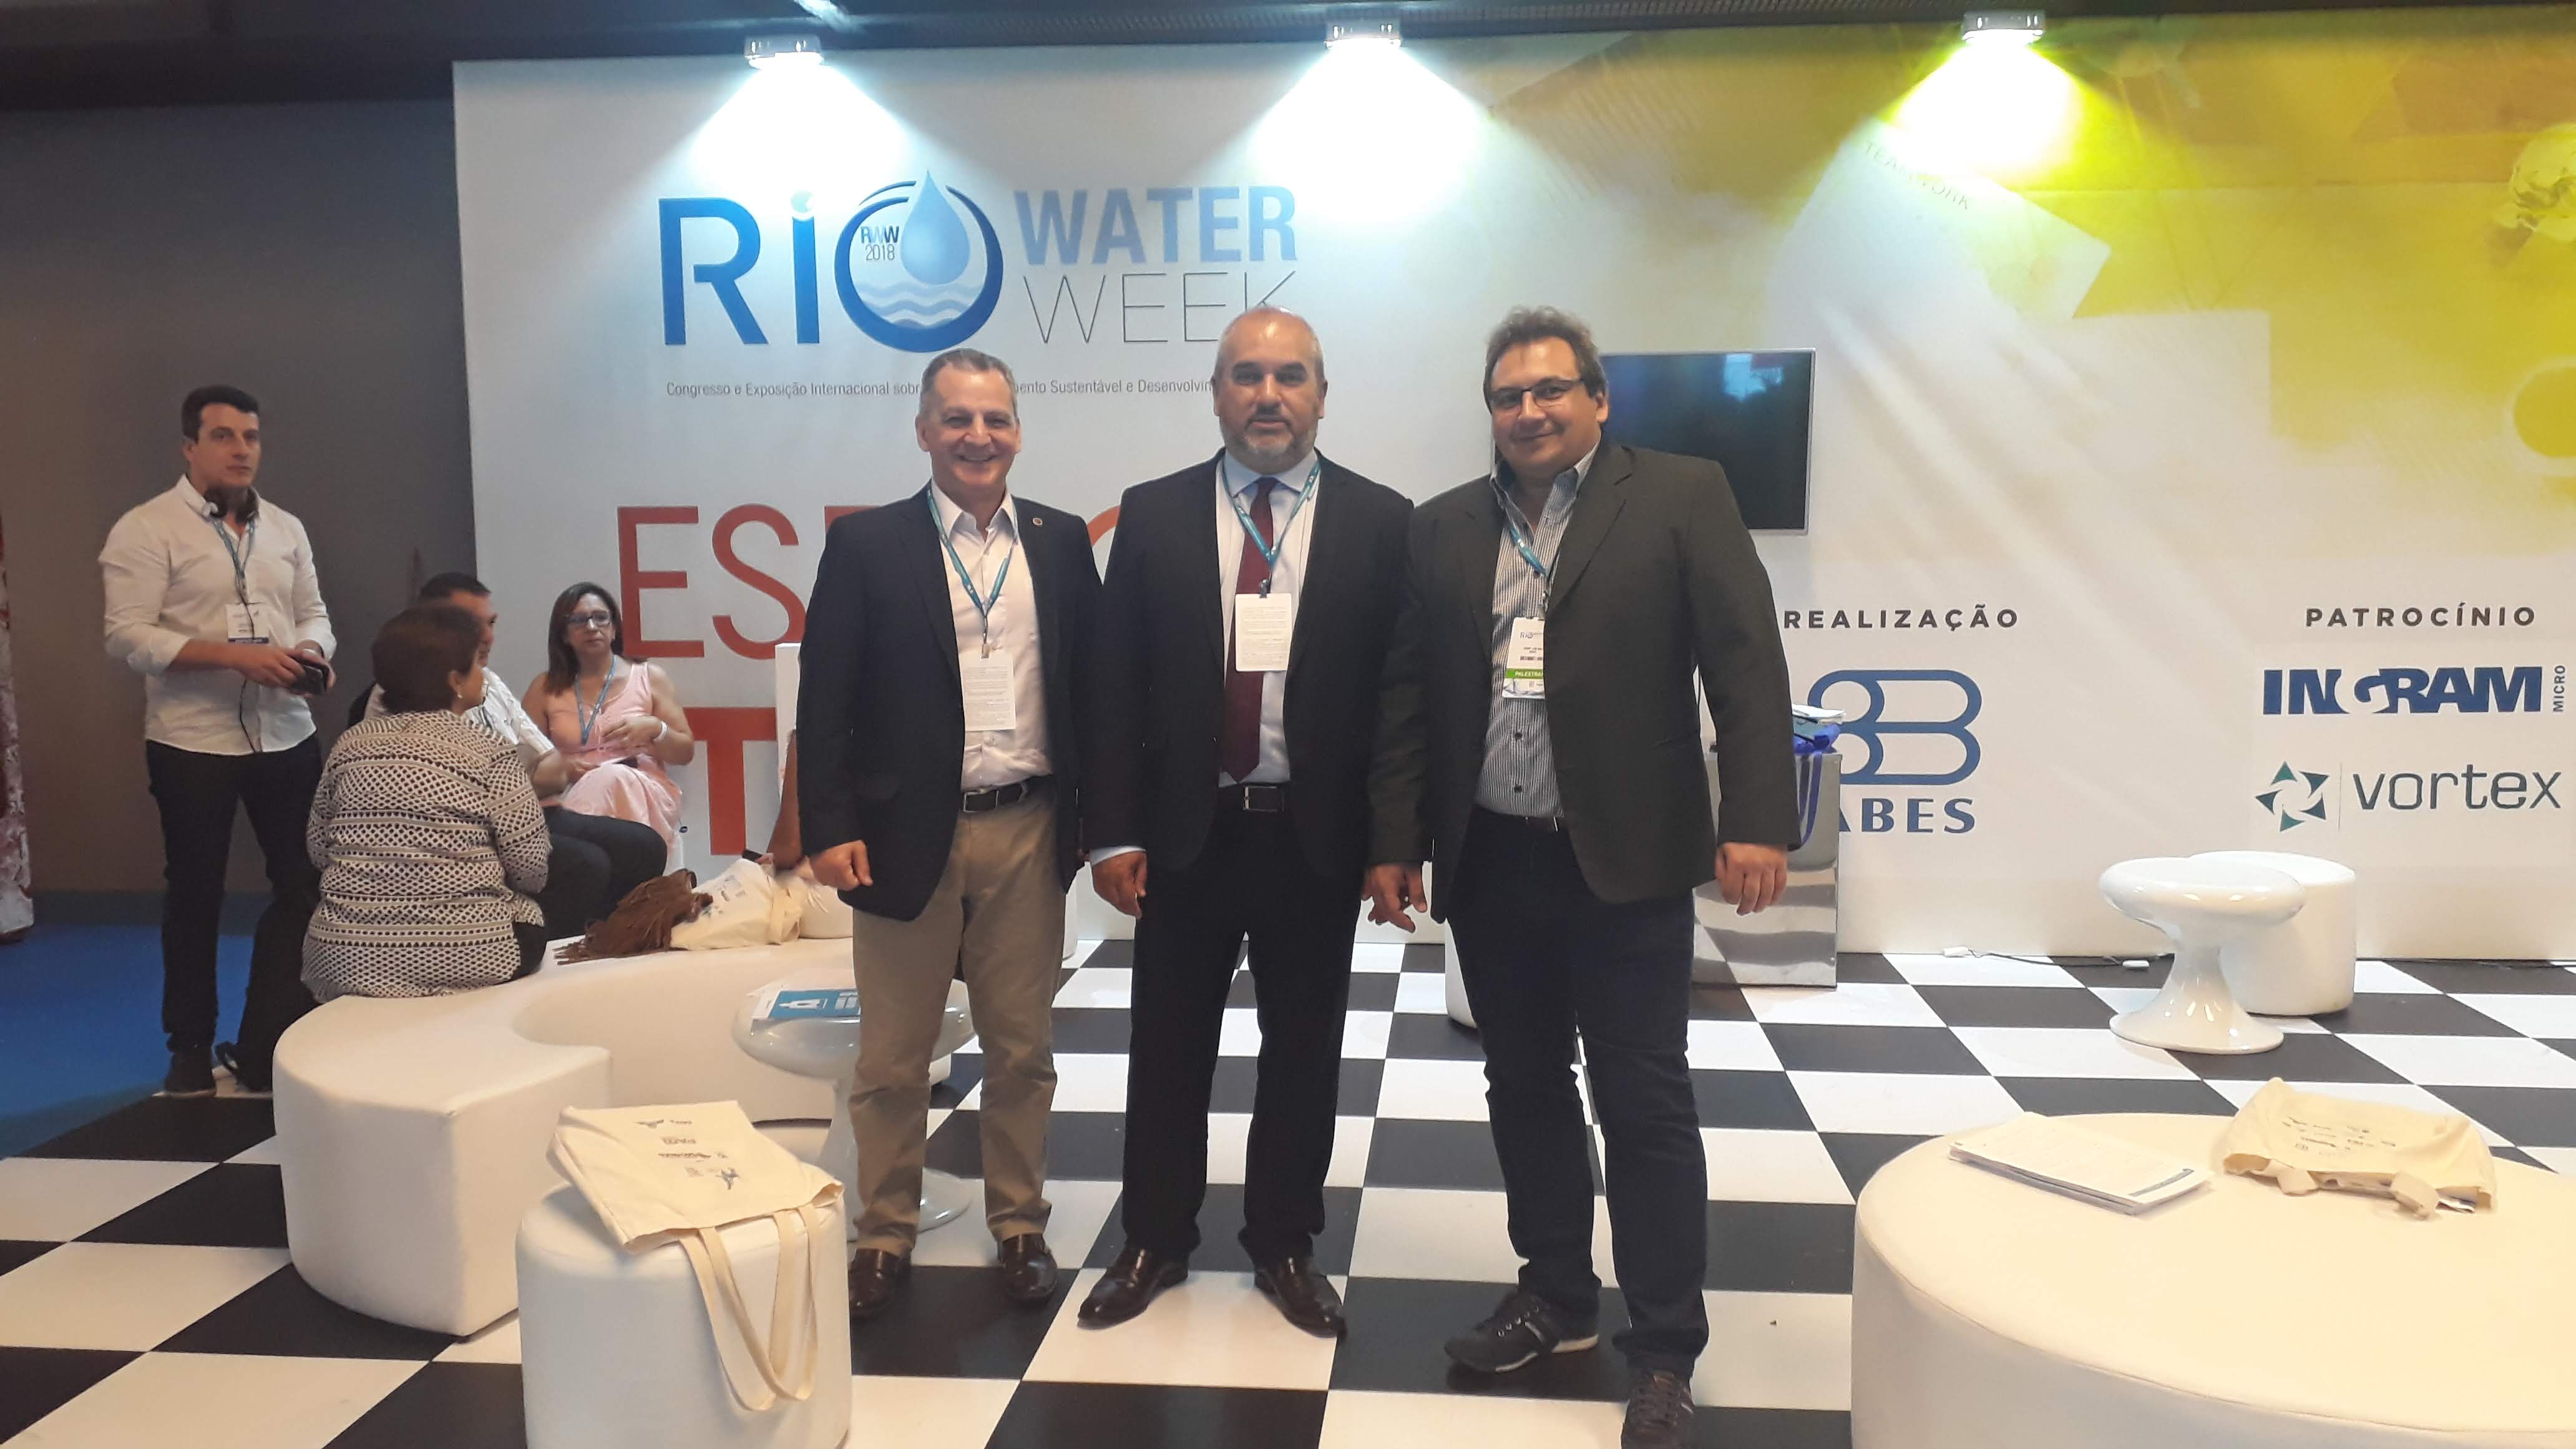 Participació de l’Associació Giswater a Rio Water Week